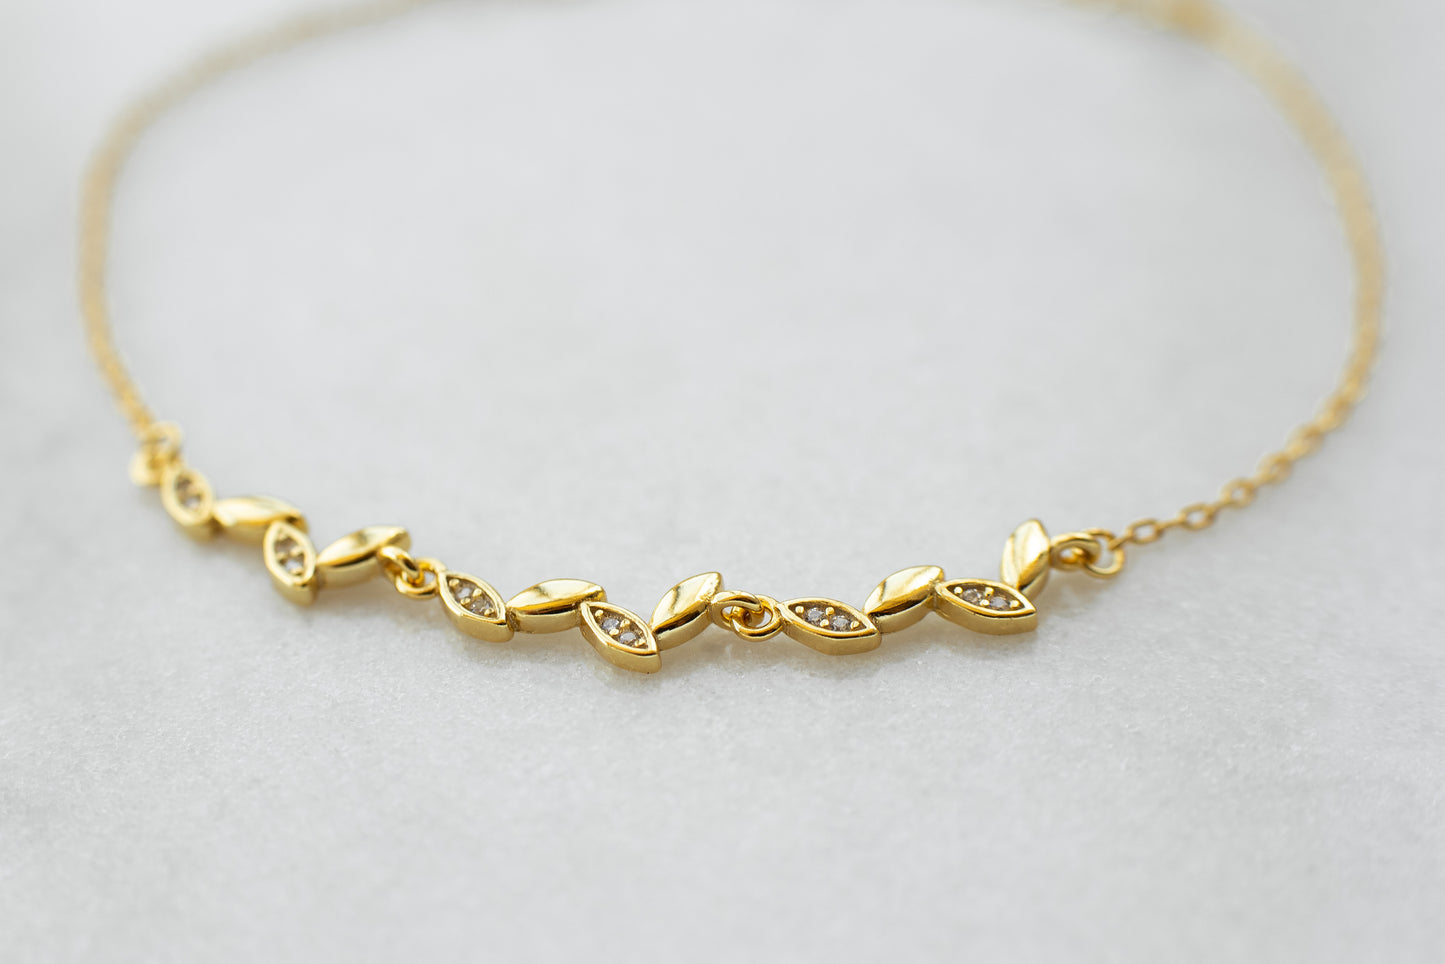 Tiny Gold Leaf Bracelet